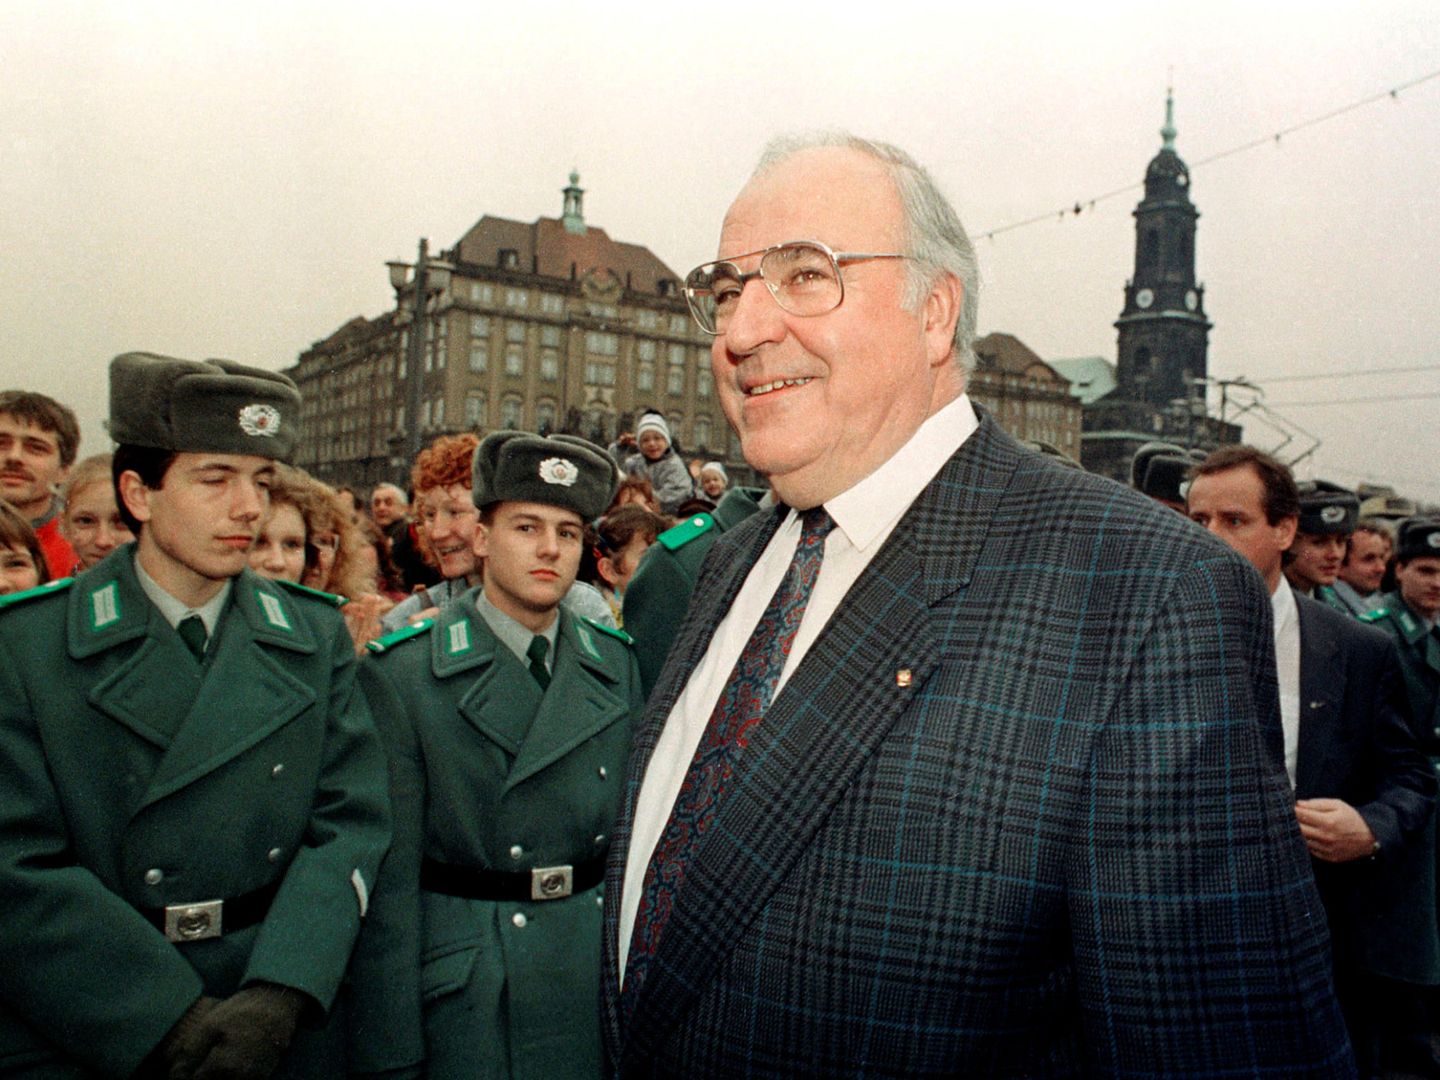 Foto de archivo del entonces canciller alemán Helmut Kohl en 1989. (Reuters)